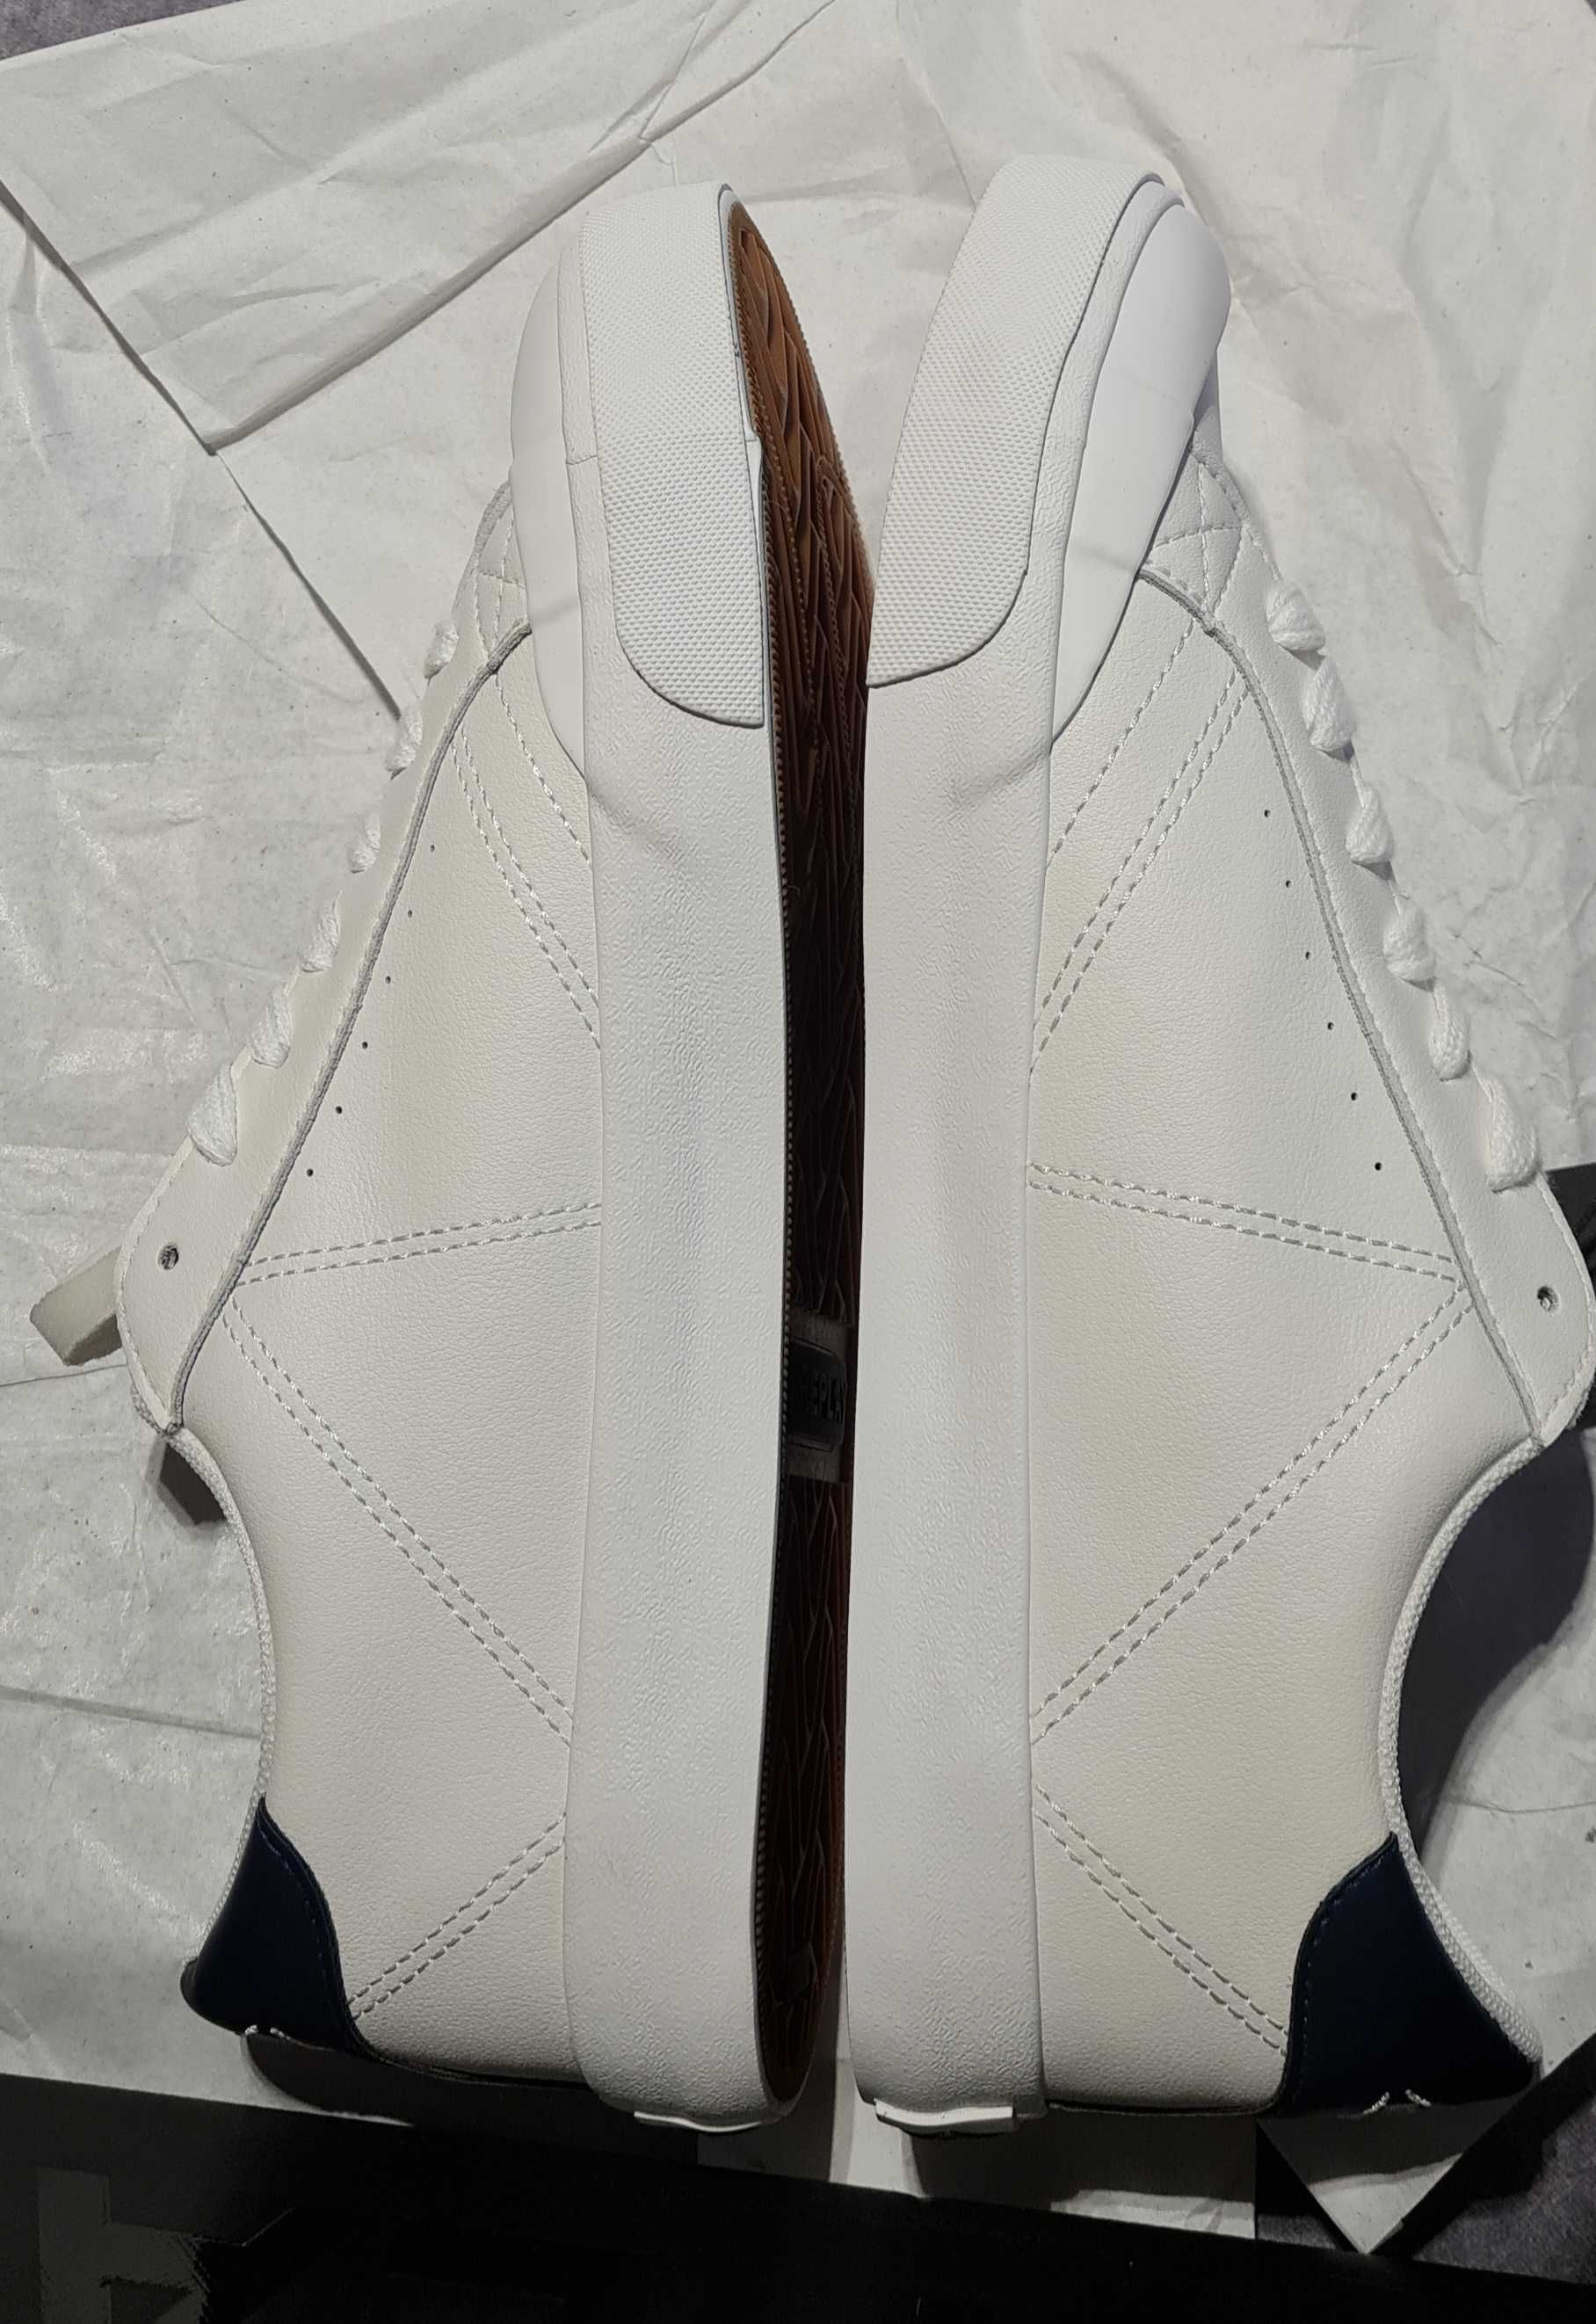 Sneakersy Replay - College Leather S  - Białe - rozmiar 42